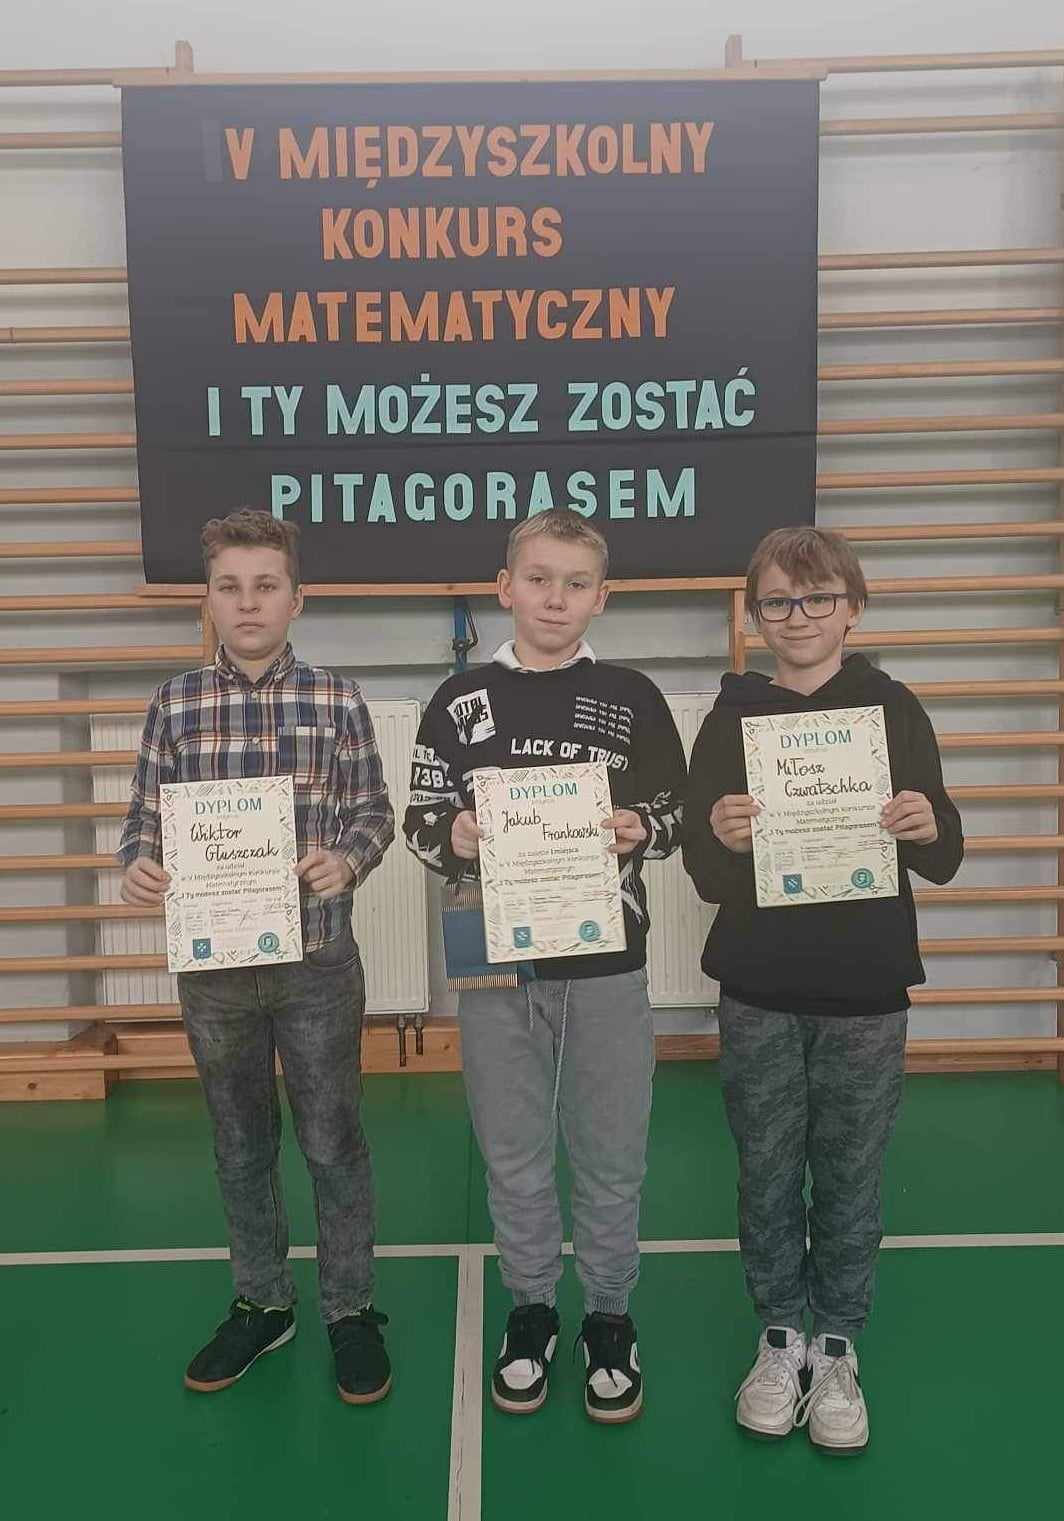 3 chłopców stoi i trzyma w rękach dyplomy. Z tyłu tablica z napisem: V Miedzyszkolny Konkurs Matematyczny I TY MOŻESZ ZOSATAĆ  PITAGORASEM.